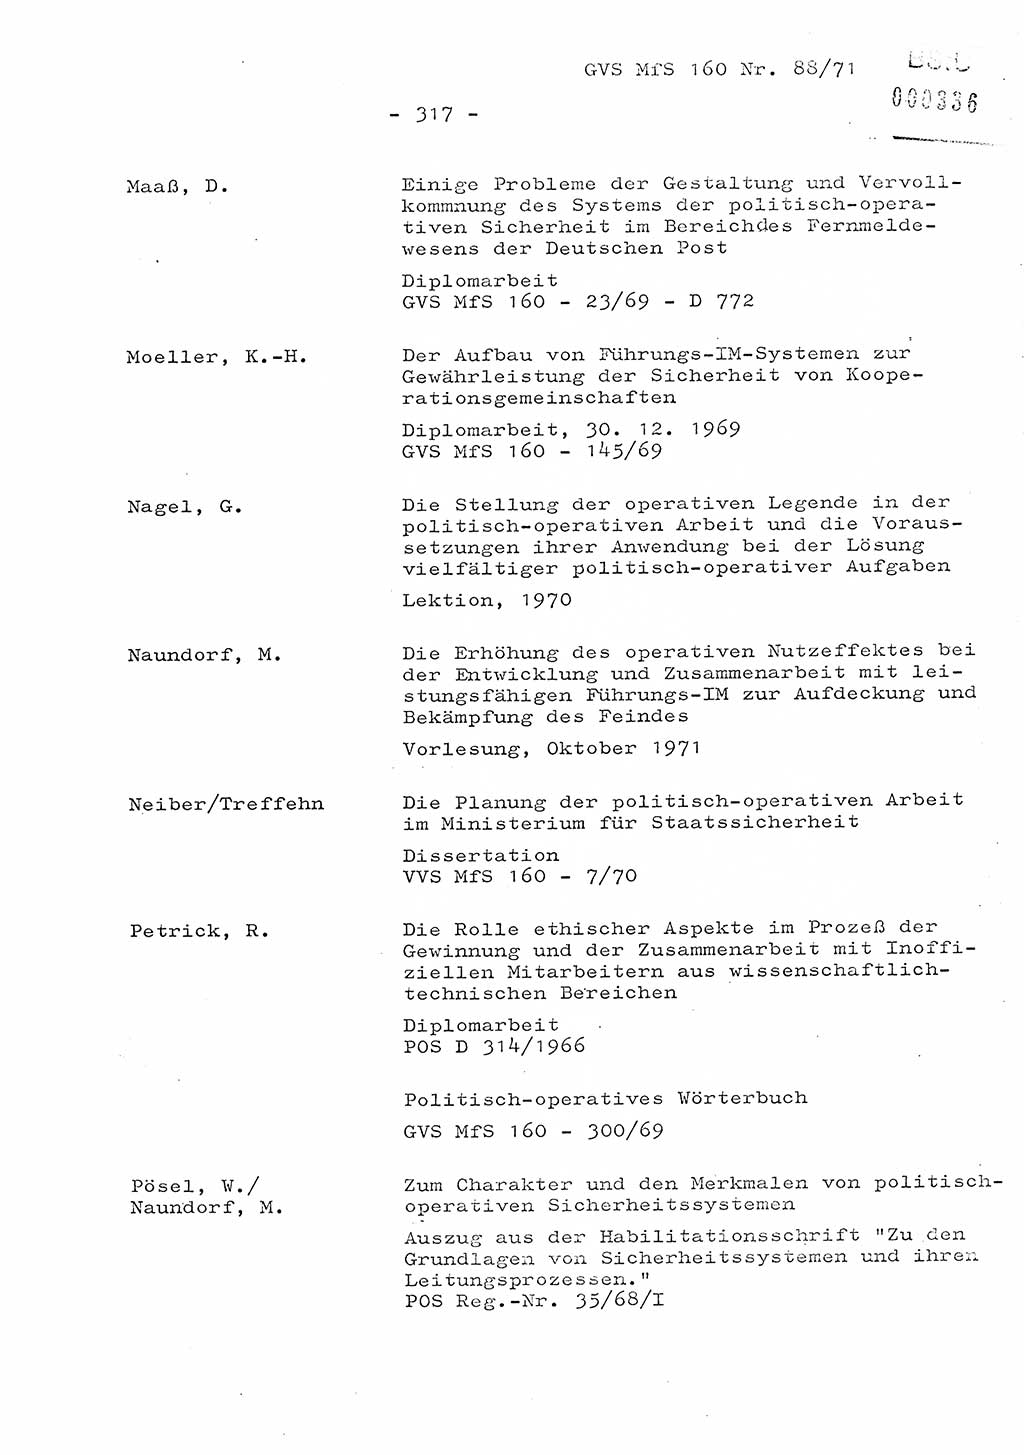 Dissertation Oberstleutnant Josef Schwarz (BV Schwerin), Major Fritz Amm (JHS), Hauptmann Peter Gräßler (JHS), Ministerium für Staatssicherheit (MfS) [Deutsche Demokratische Republik (DDR)], Juristische Hochschule (JHS), Geheime Verschlußsache (GVS) 160-88/71, Potsdam 1972, Seite 317 (Diss. MfS DDR JHS GVS 160-88/71 1972, S. 317)